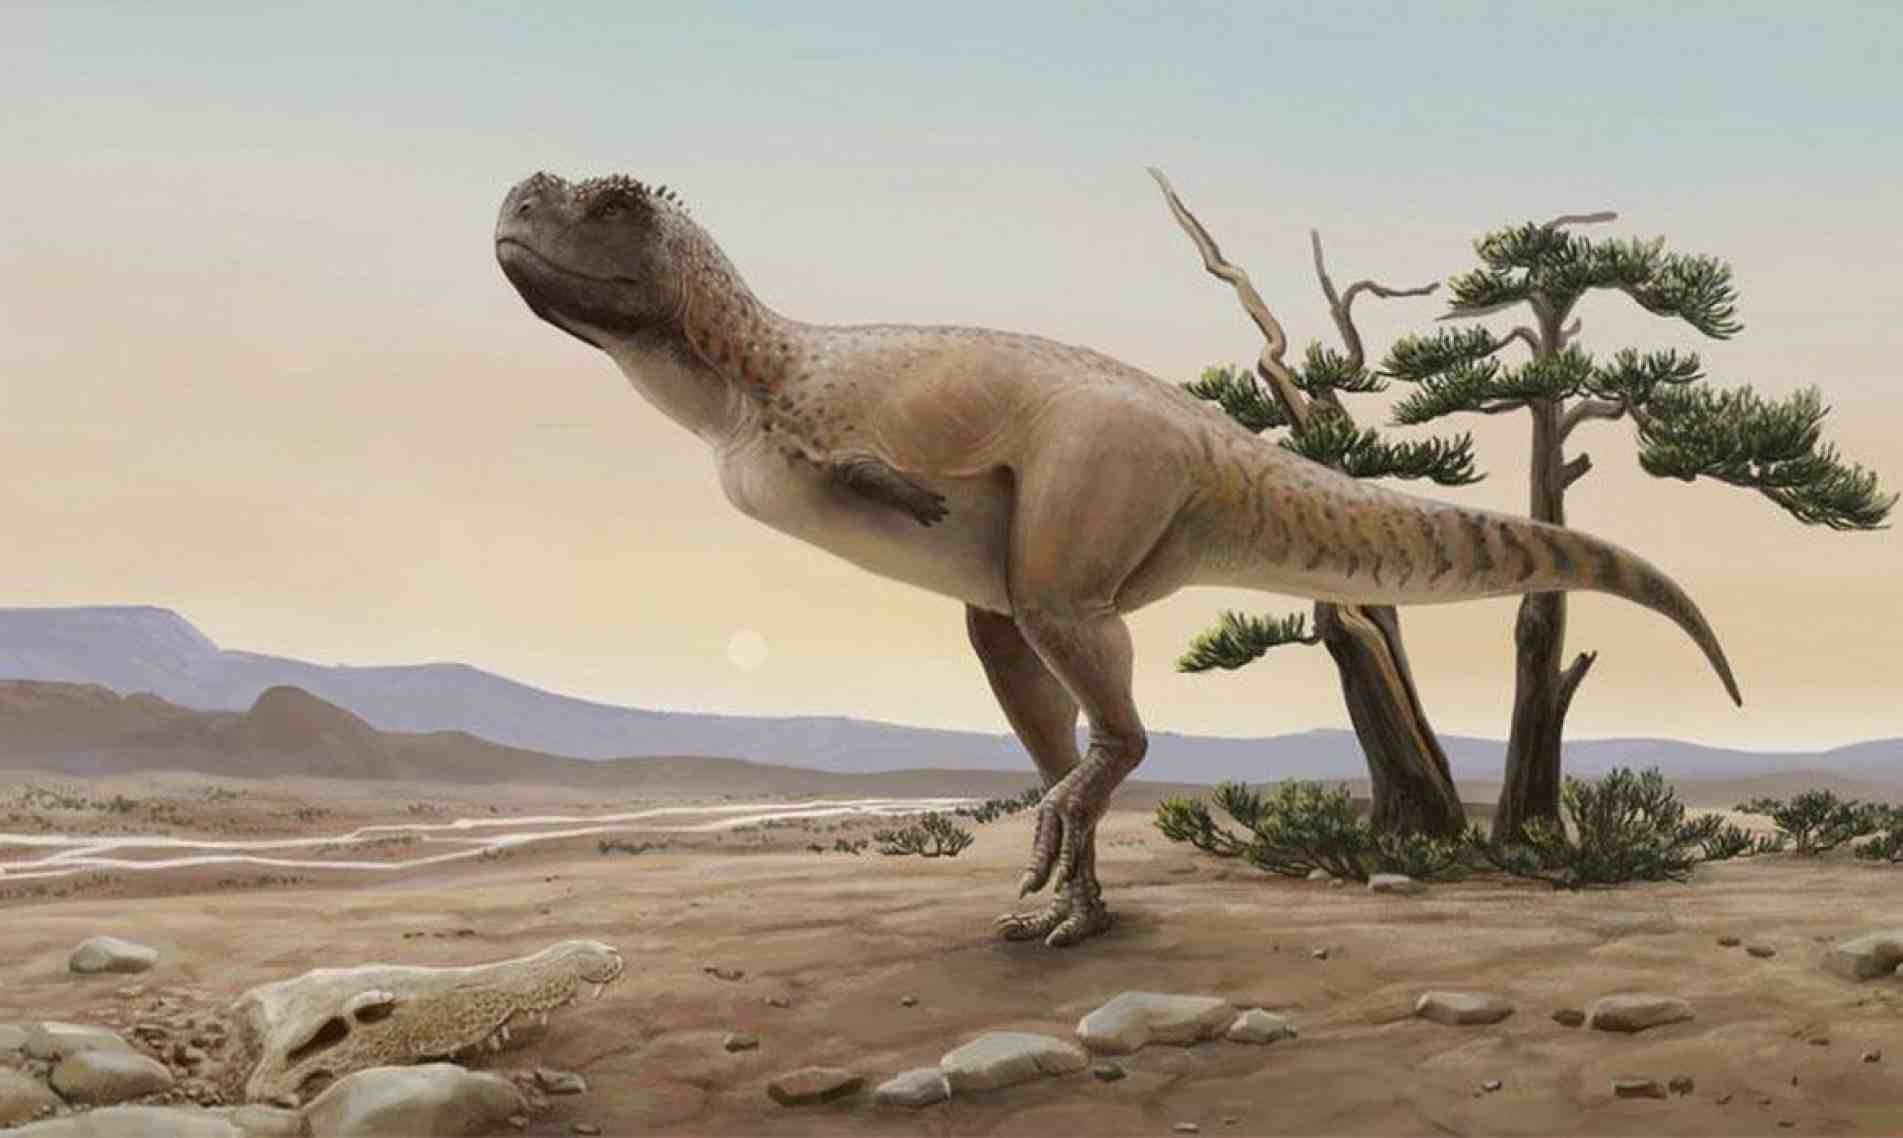 Esses grandes animais habitaram a região no Período Cretáceo, há 65 milhões de anos